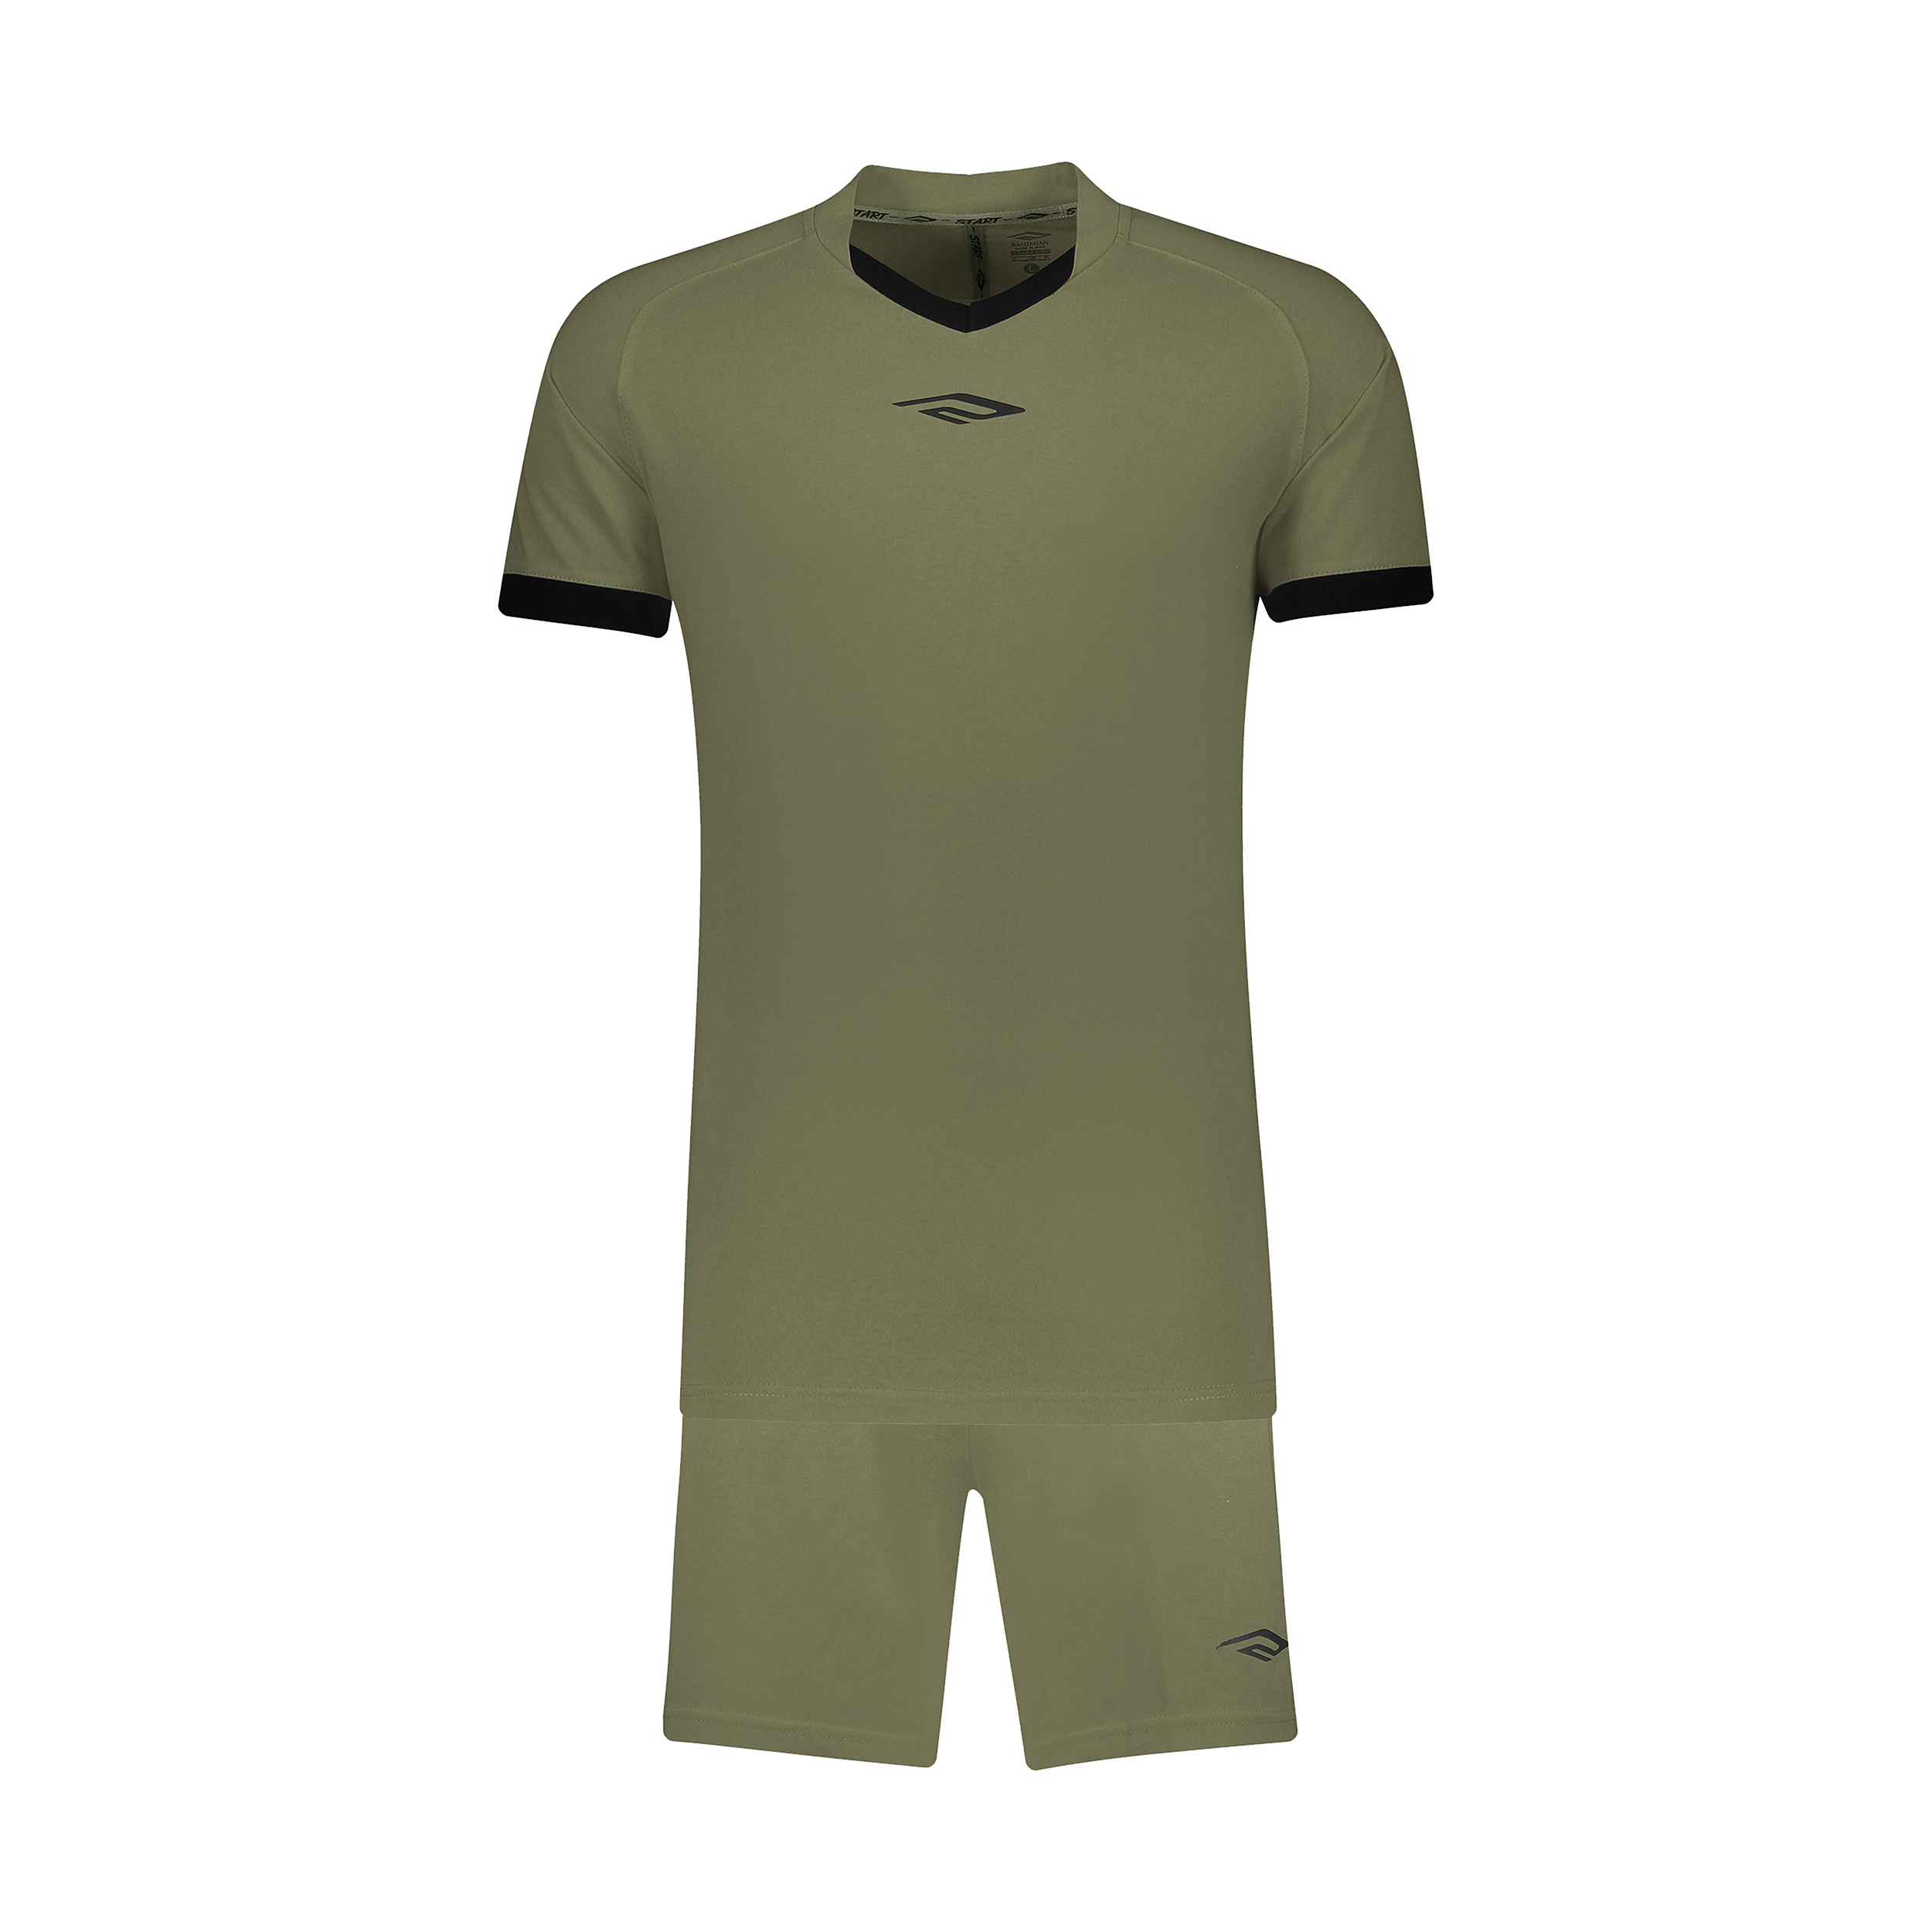 ست پیراهن و شورت ورزشی مردانه استارت مدل v1001-4